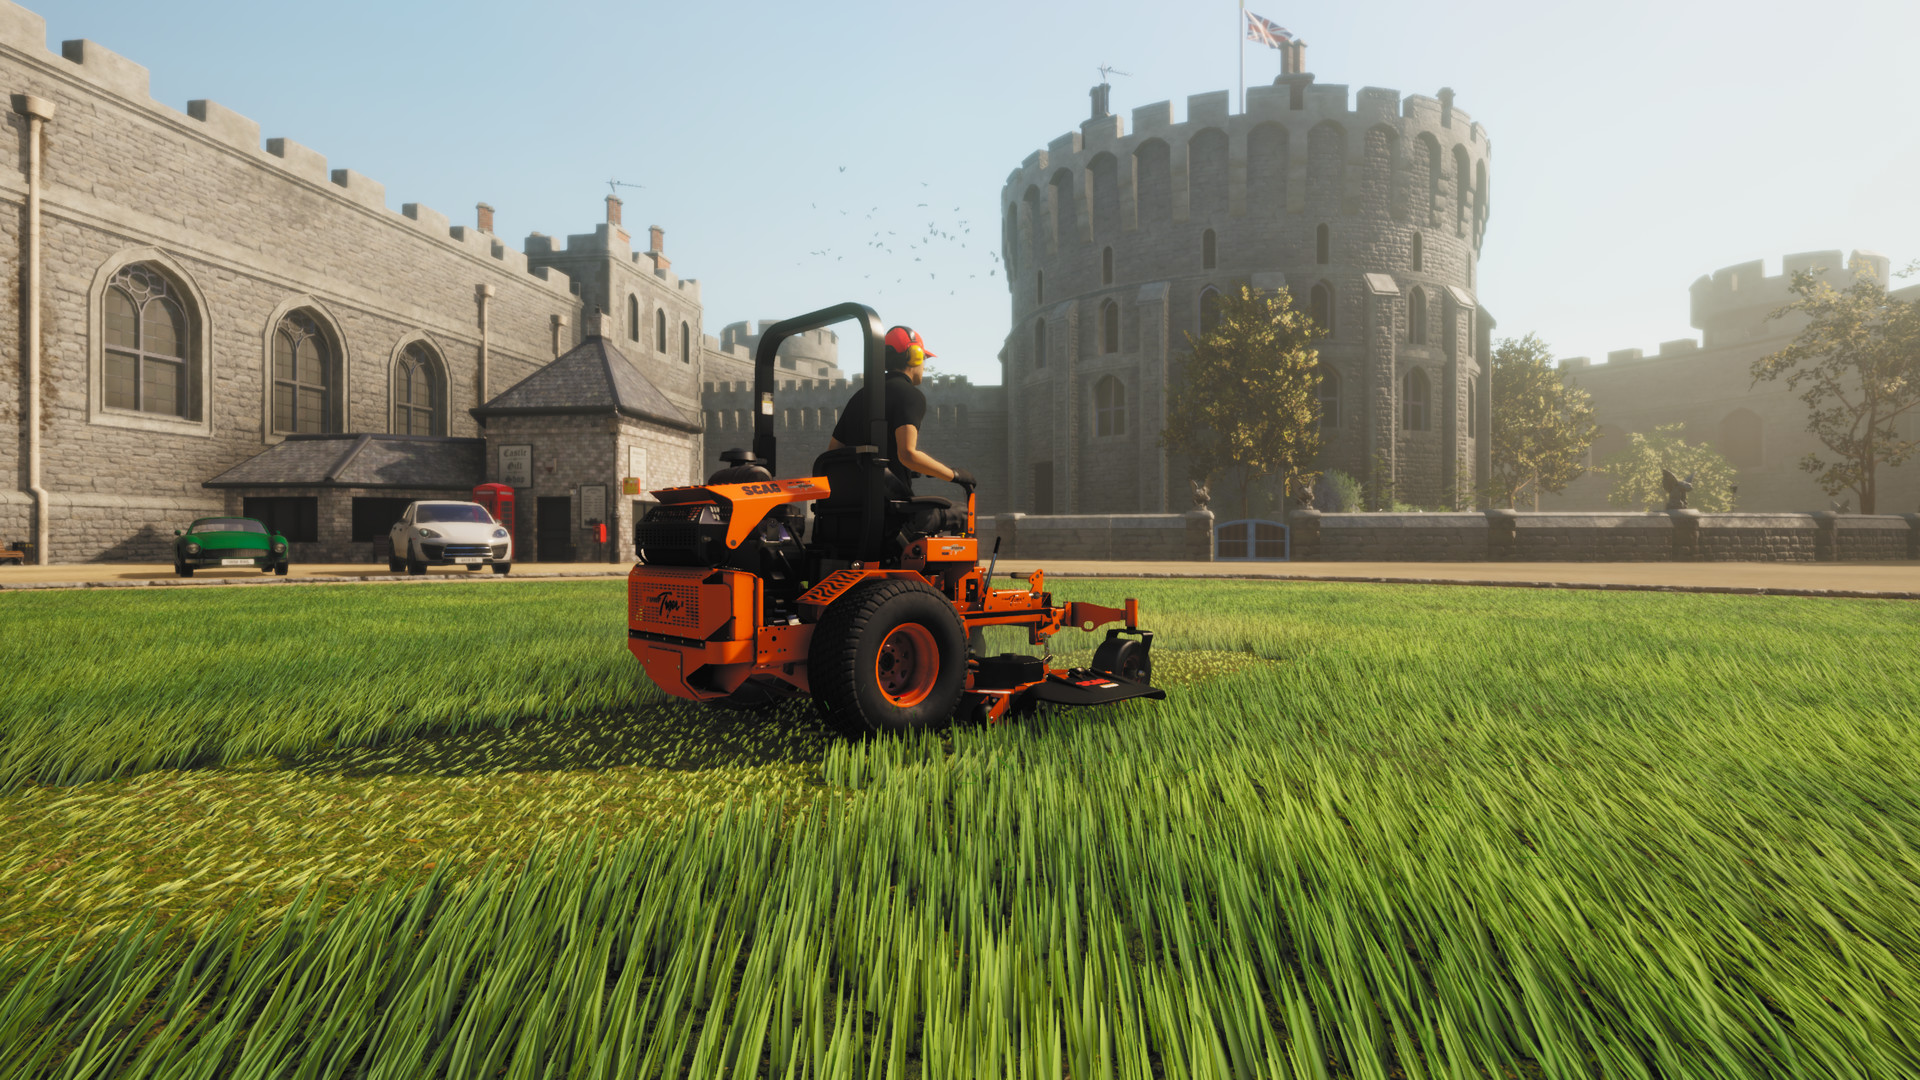 Mowing a lawn near a castle